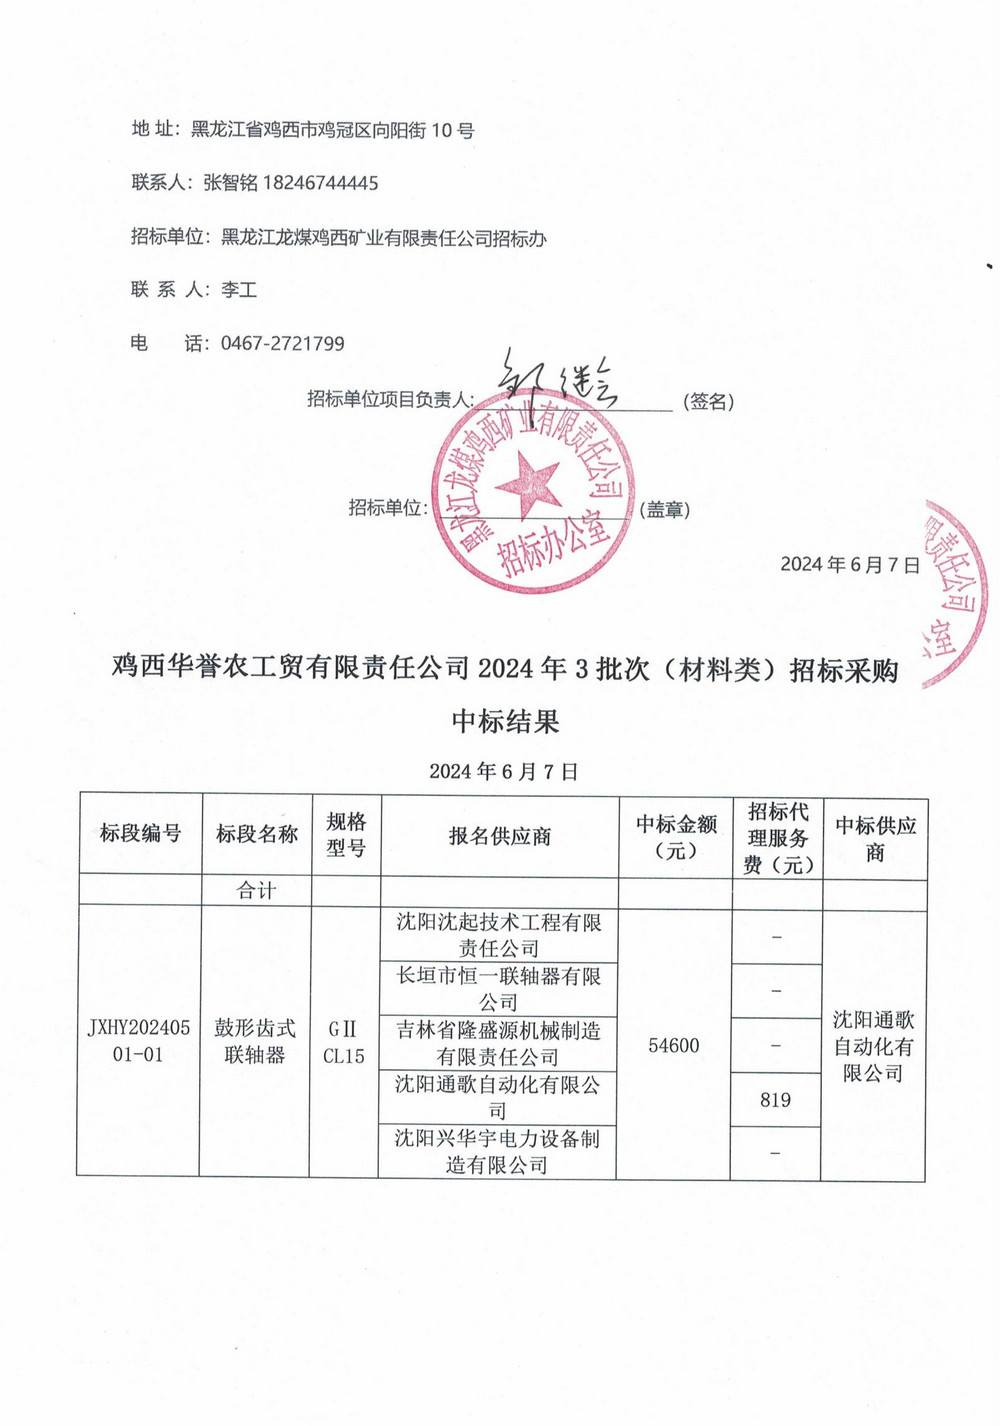 鸡西华誉农工贸有限责任公司3批次材料中标公示_01.jpg